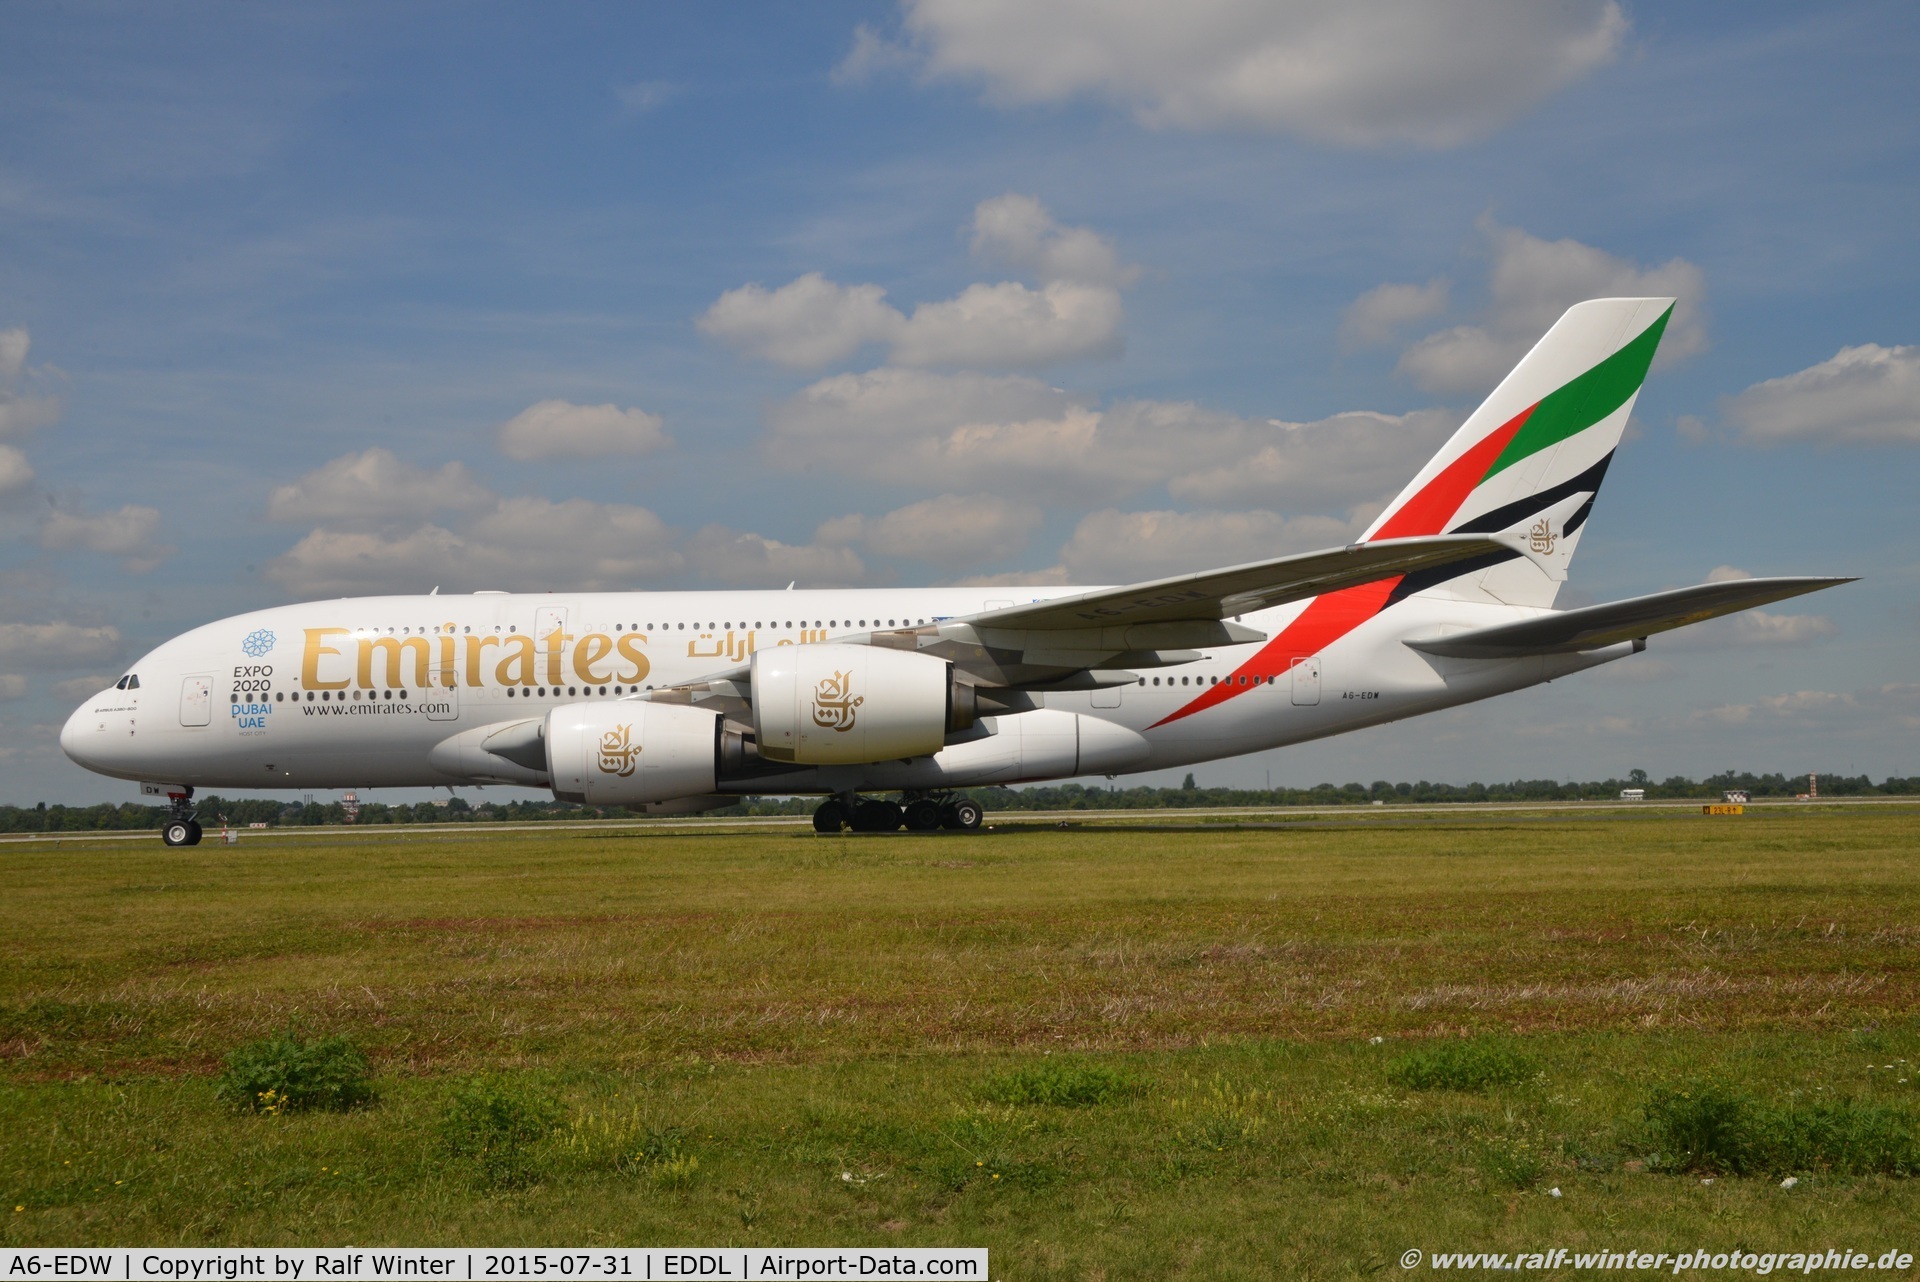 A6-EDW, 2012 Airbus A380-861 C/N 103, Airbus A380-861 - EK UAE Emirates 'Expo 2020 Dubai' - 103 - A6-EDW - 31.07.2015 - DUS